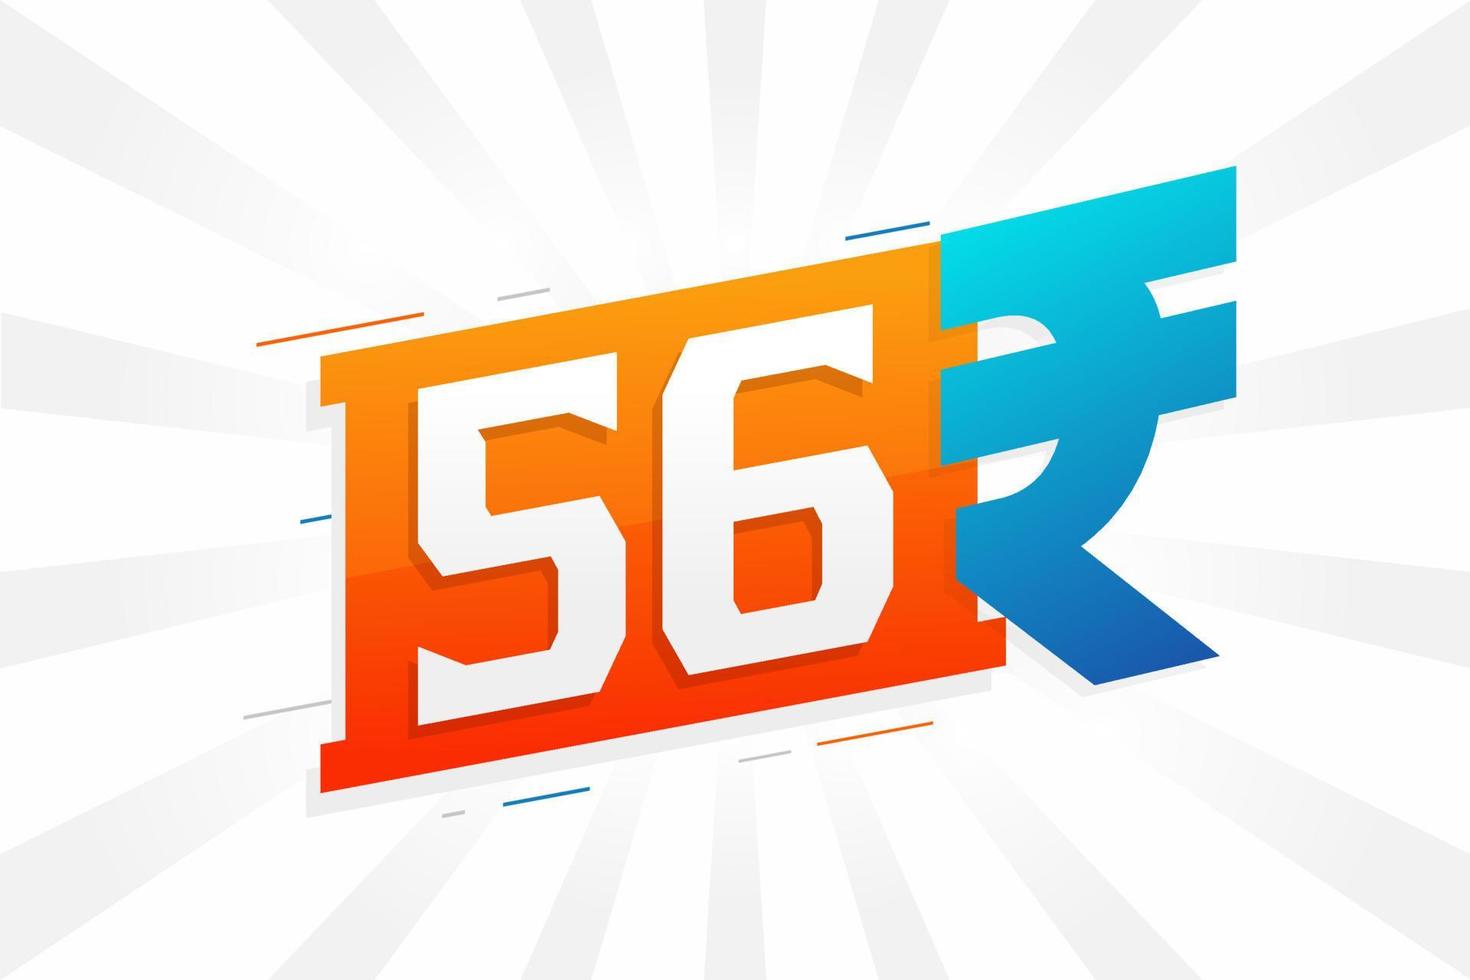 Imagen vectorial de texto en negrita del símbolo de 56 rupias. 56 rupia india signo de moneda ilustración vectorial vector